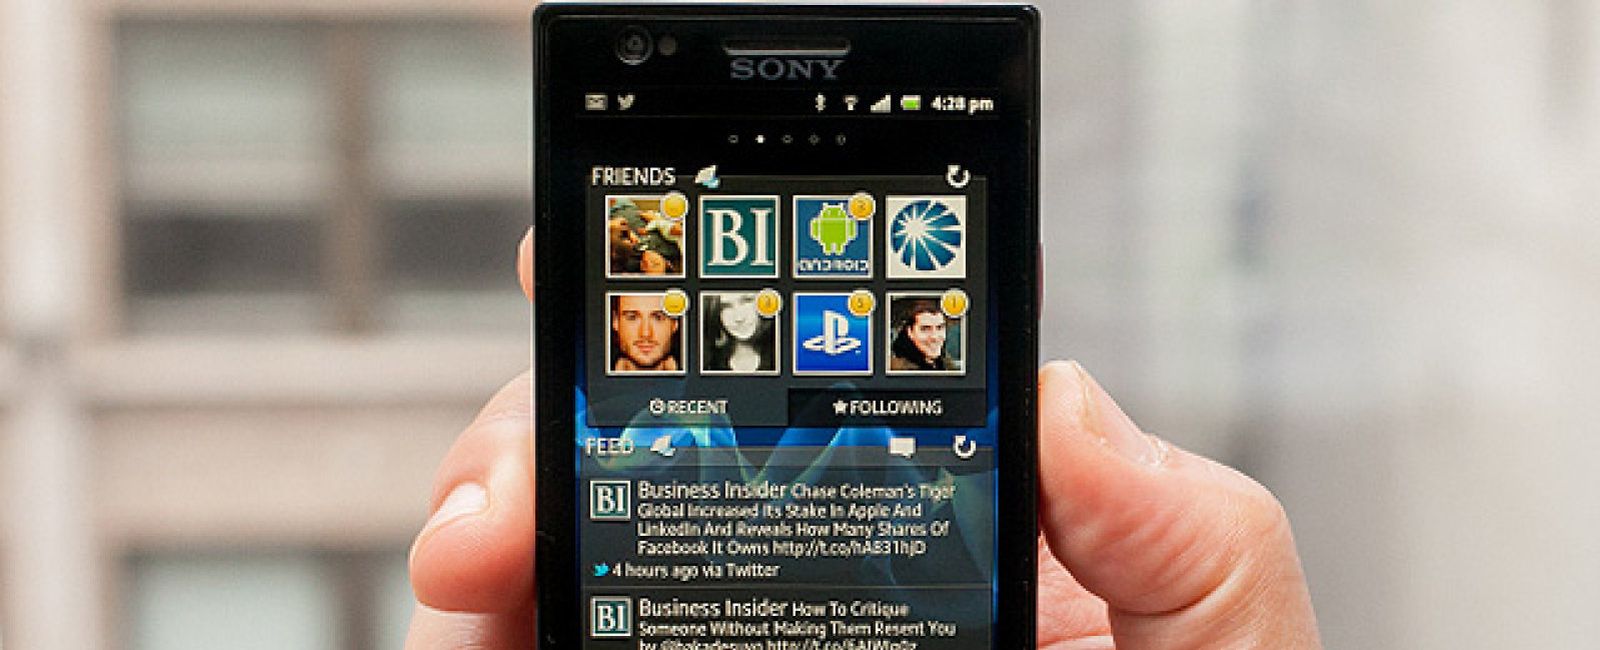 Foto: ¿Cuál es el móvil con mejor pantalla del mercado? Según los usuarios: Sony Xperia P